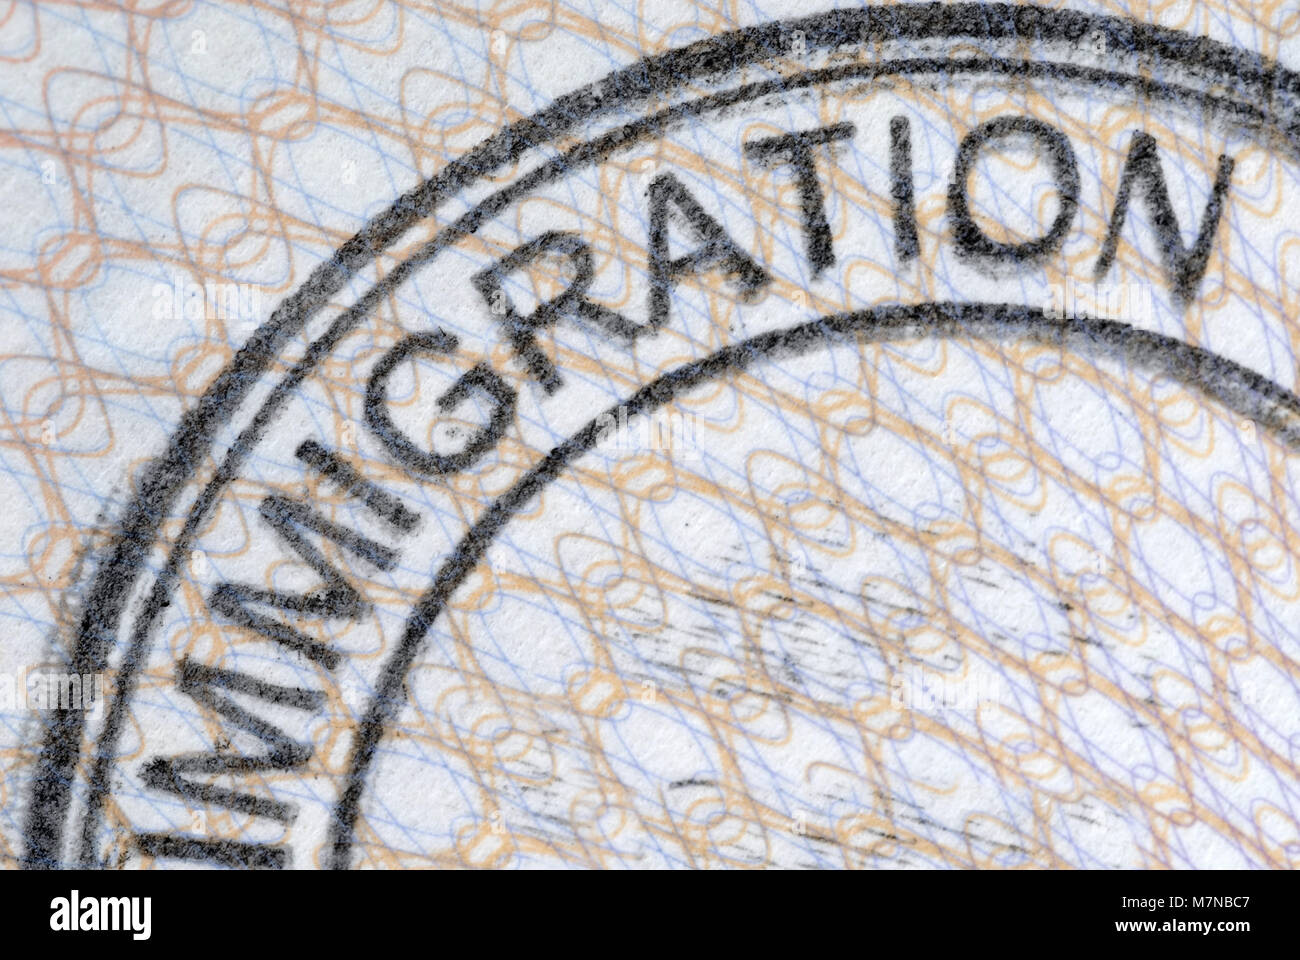 Einwanderung Eingangsstempel auf der inneren Seite des Reisepasses. Platz für Kopieren. Stockfoto